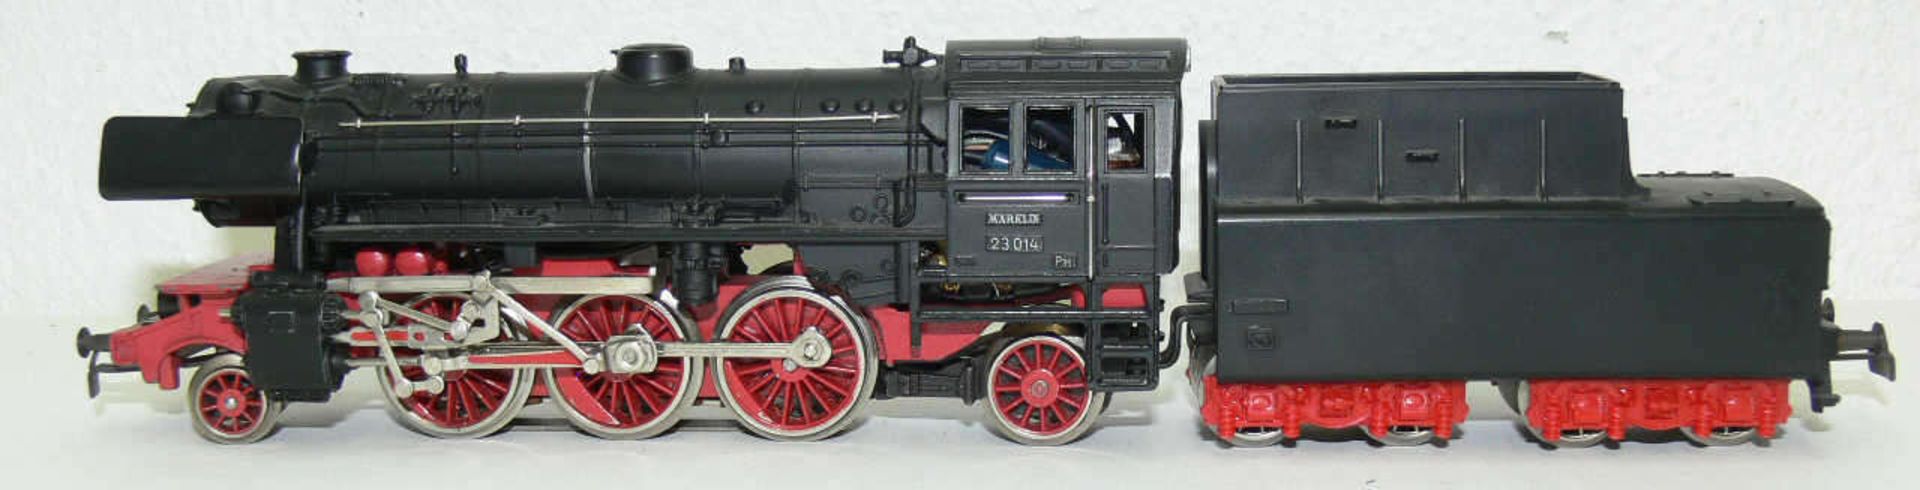 Märklin Dampflokomotive mit Schlepptender BR 23 der DB. BN 23 014. Guss. Ohne OVP. Mit leichten